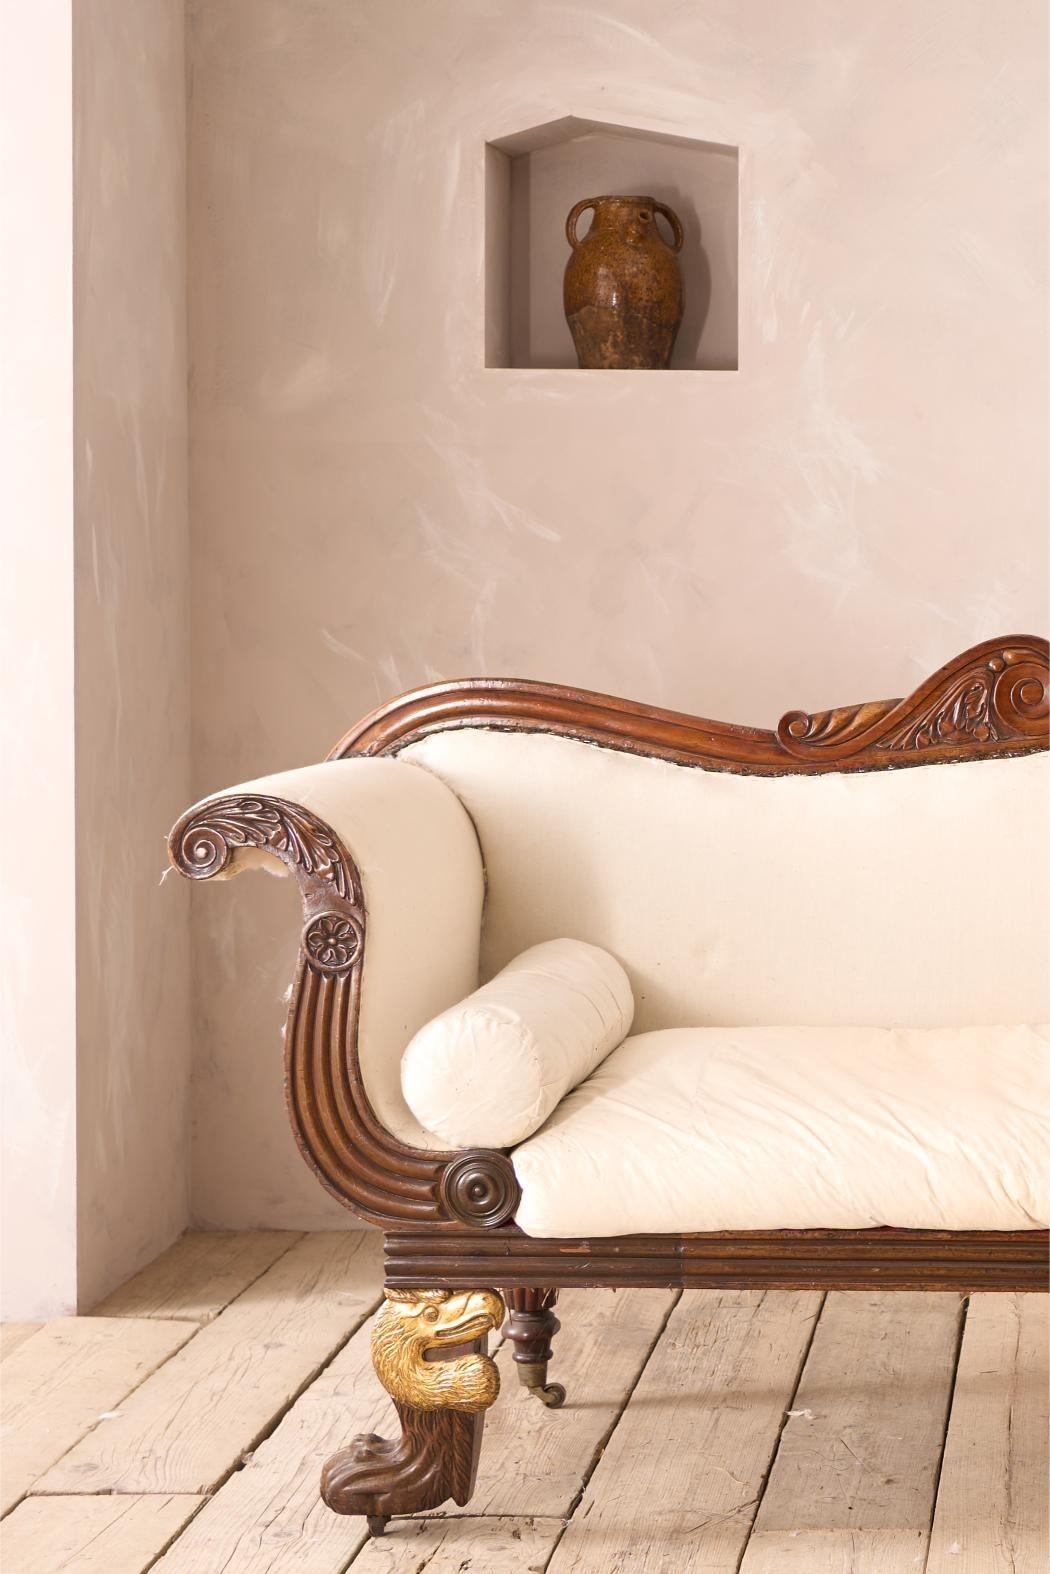 Il s'agit d'un canapé de campagne anglais d'époque Régence tout à fait exceptionnel. Le design et la taille sont fabuleux, mais ce qui distingue vraiment ce modèle, ce sont les détails uniques de la tête de Dodo sur les jambes. Je n'en ai jamais vu